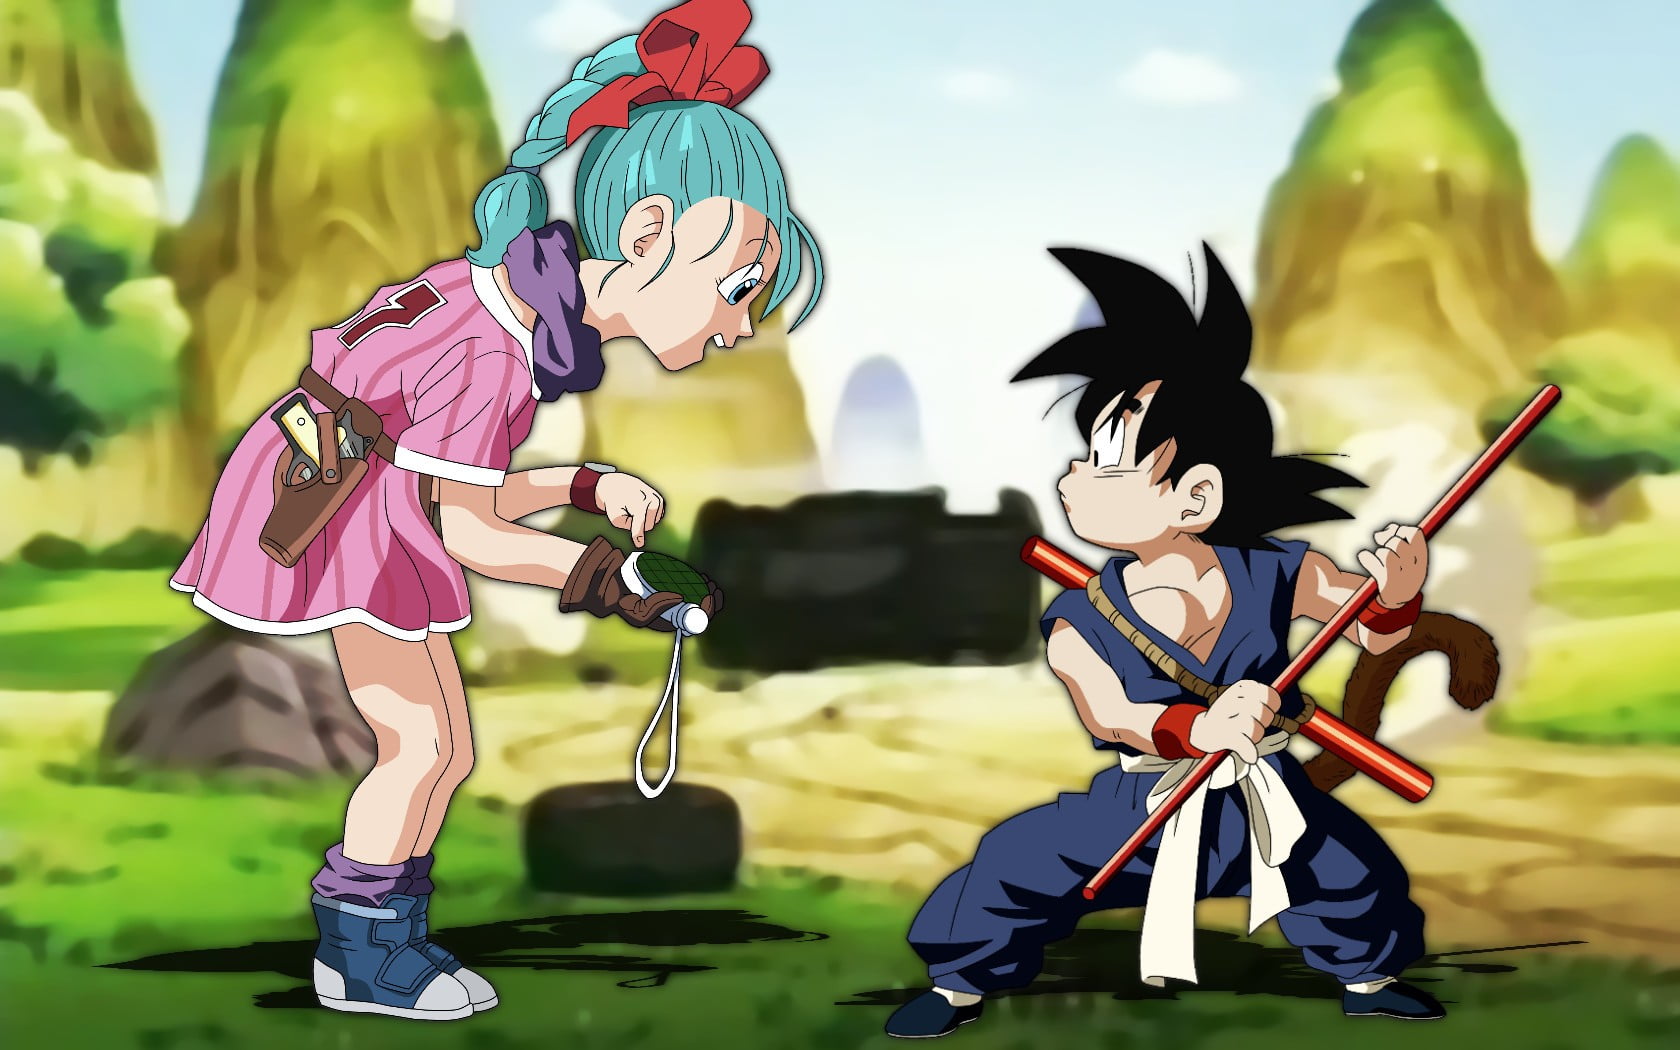 Dragon Ball Z Goku and Bulma illustration.